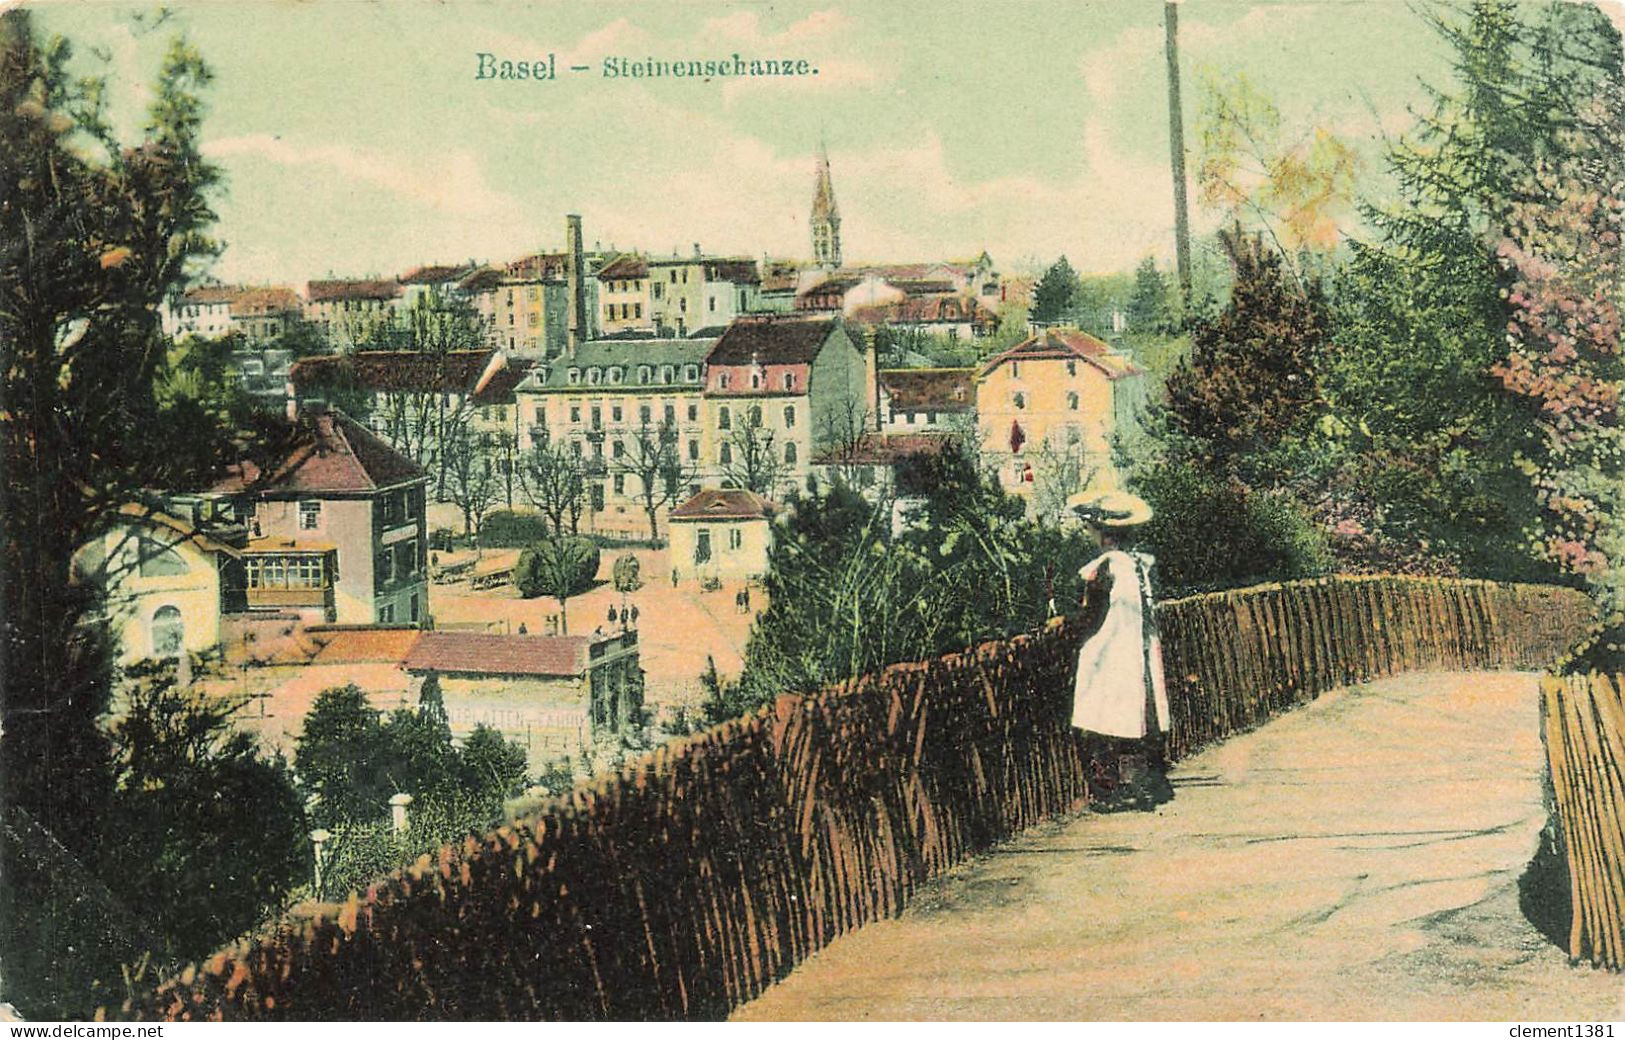 Basel Steinenschanze - Bazel